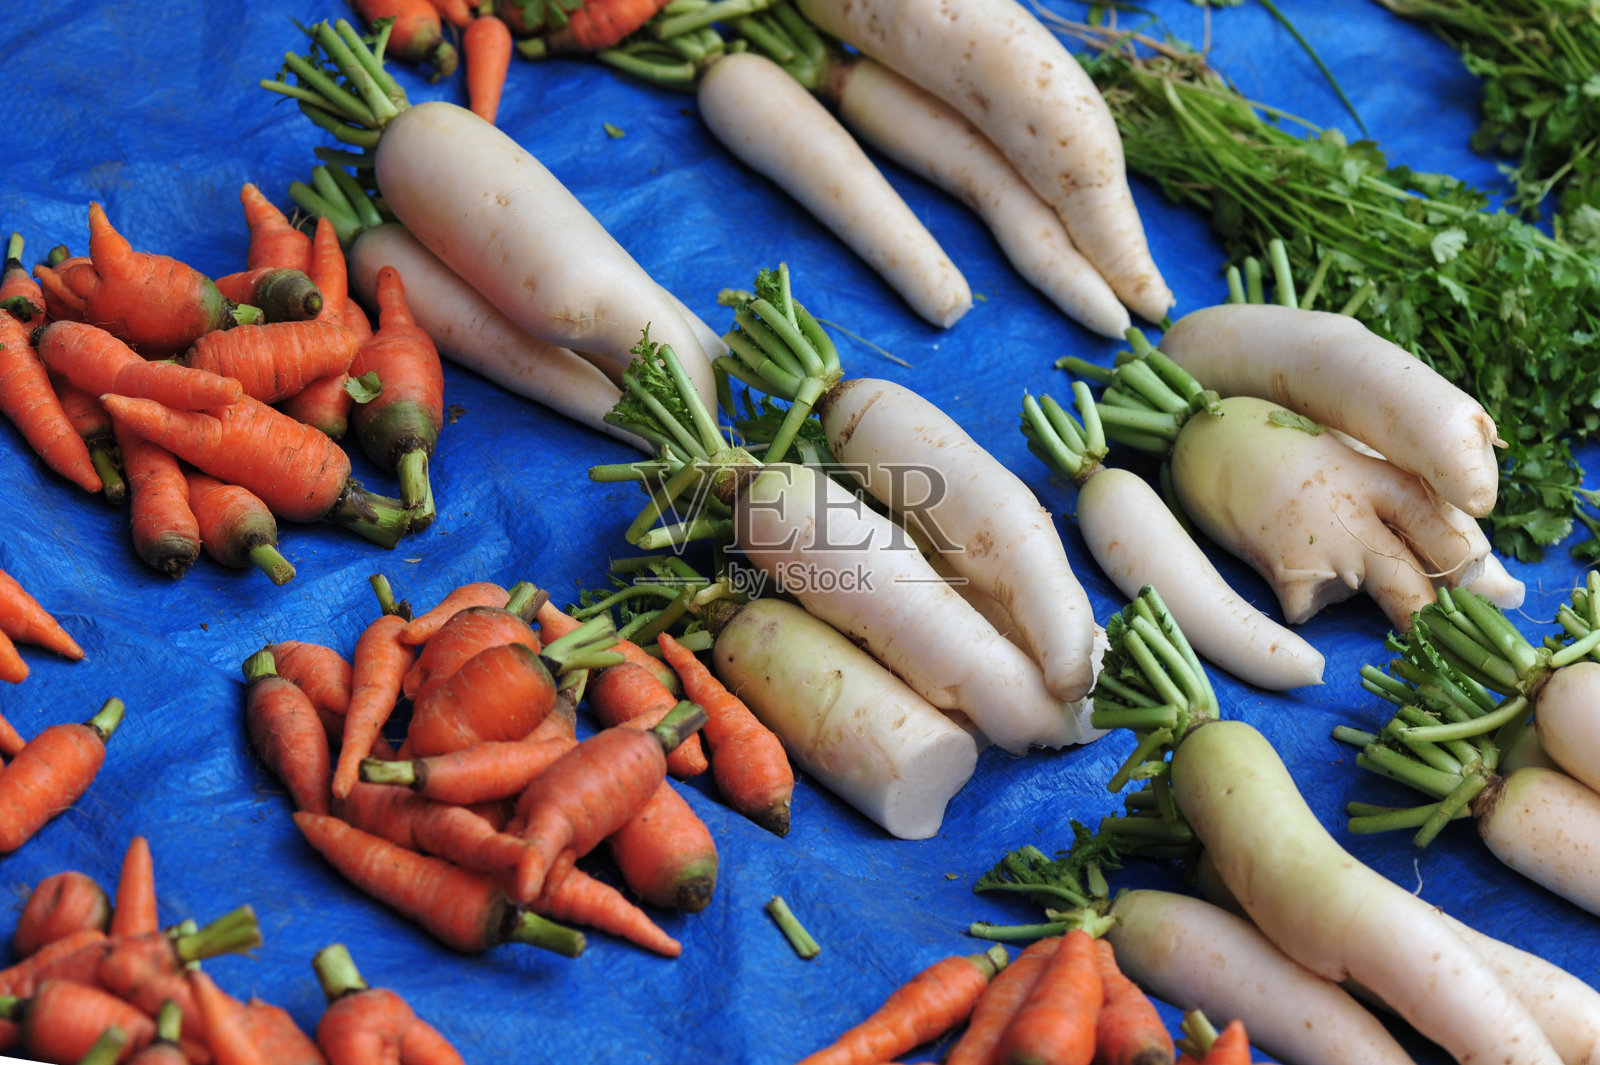 尼泊尔街头商店出售的有机新鲜蔬菜照片摄影图片